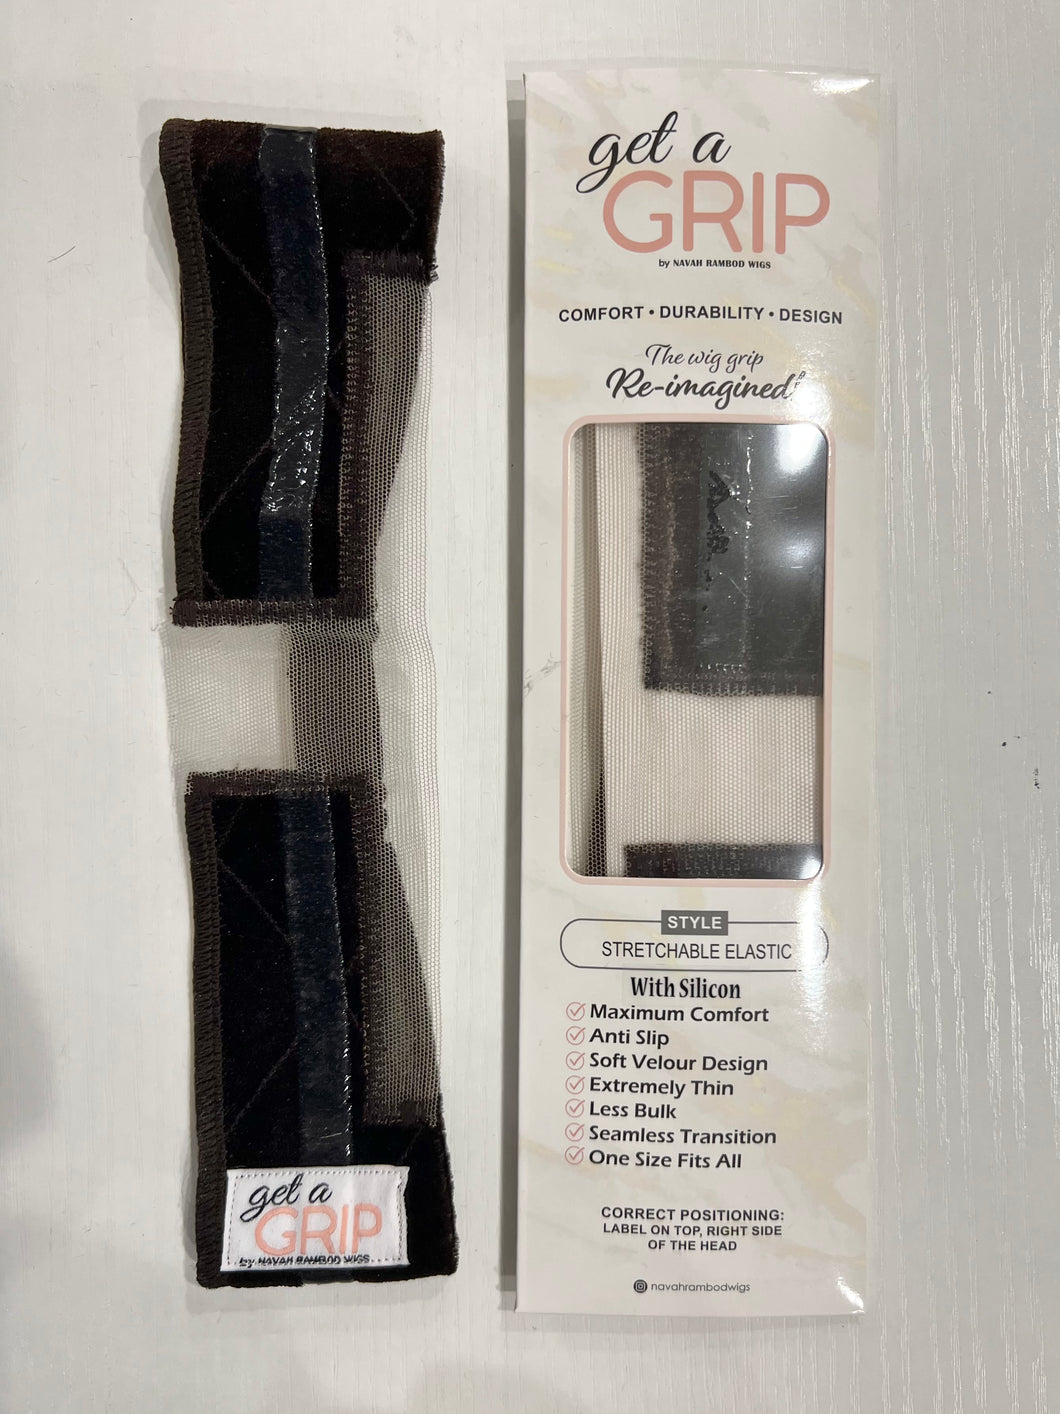 Get A Grip! with the GripAfix by Wig Guru 